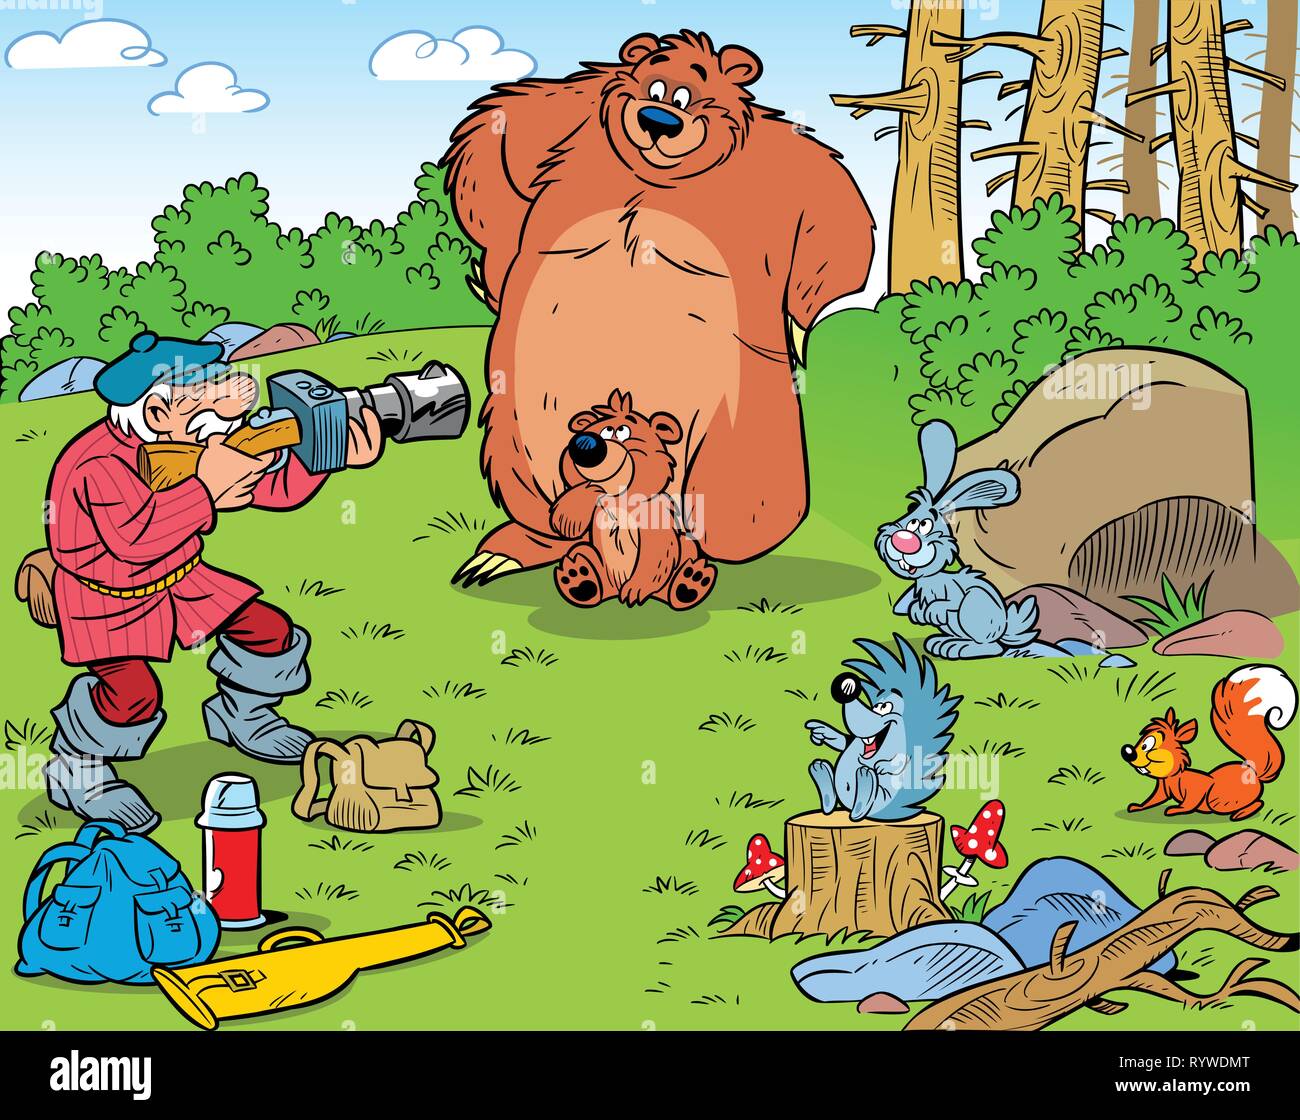 La figura mostra un cacciatore di fotografare gli animali selvatici. Illustrazione fatta in un divertente stile cartoon. Illustrazione Vettoriale